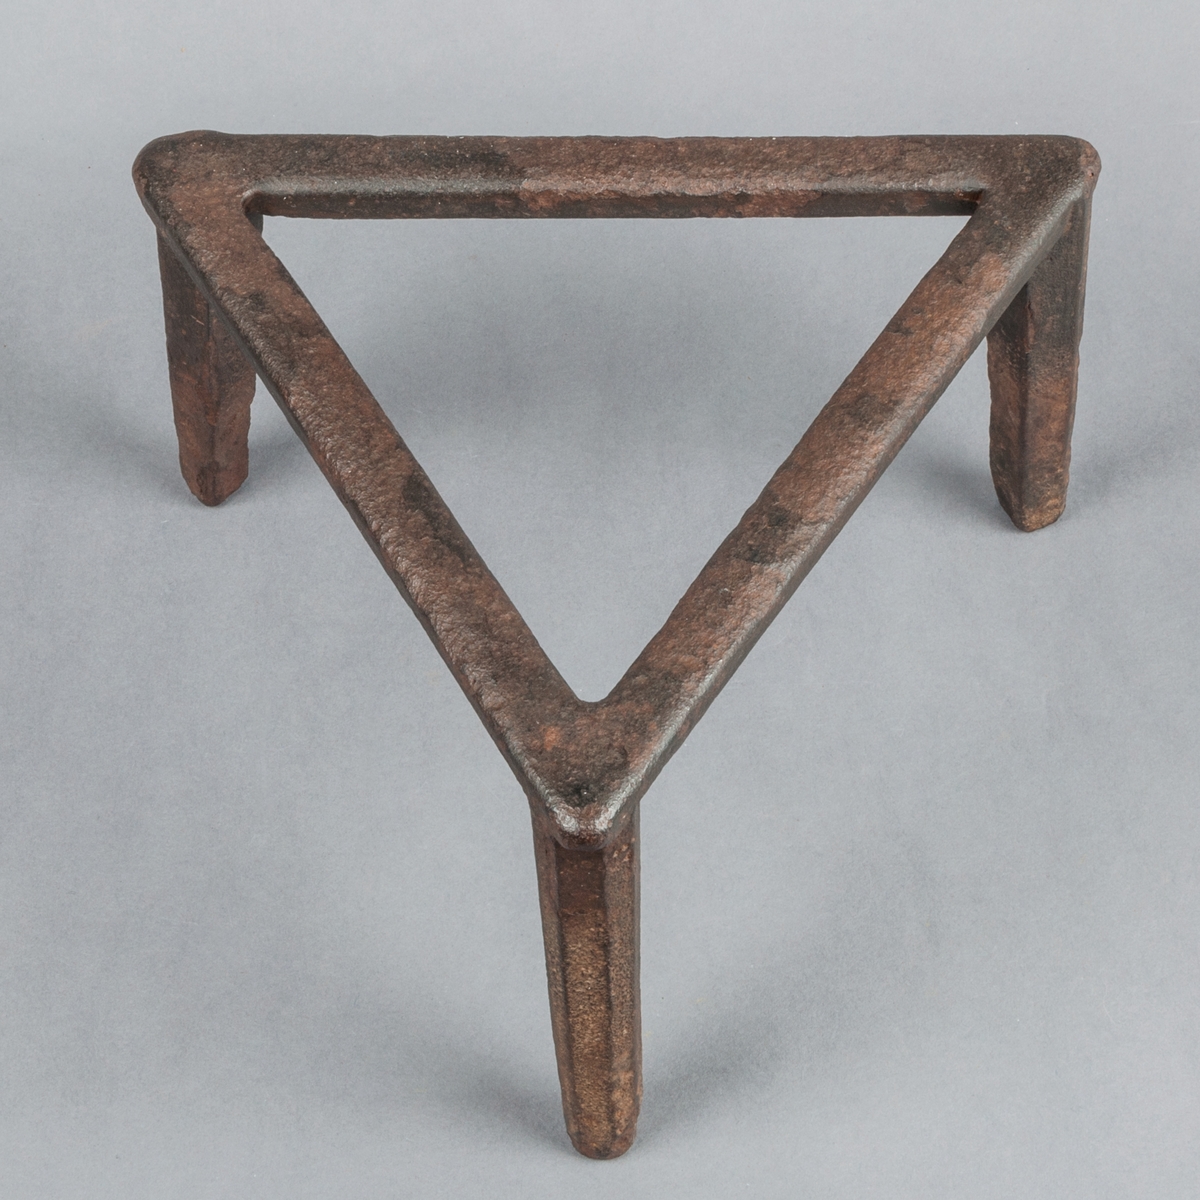 Grytfot av järn, trekantig, likbent triangel.
Tre fötter. Längd i sidan: 24 cm.